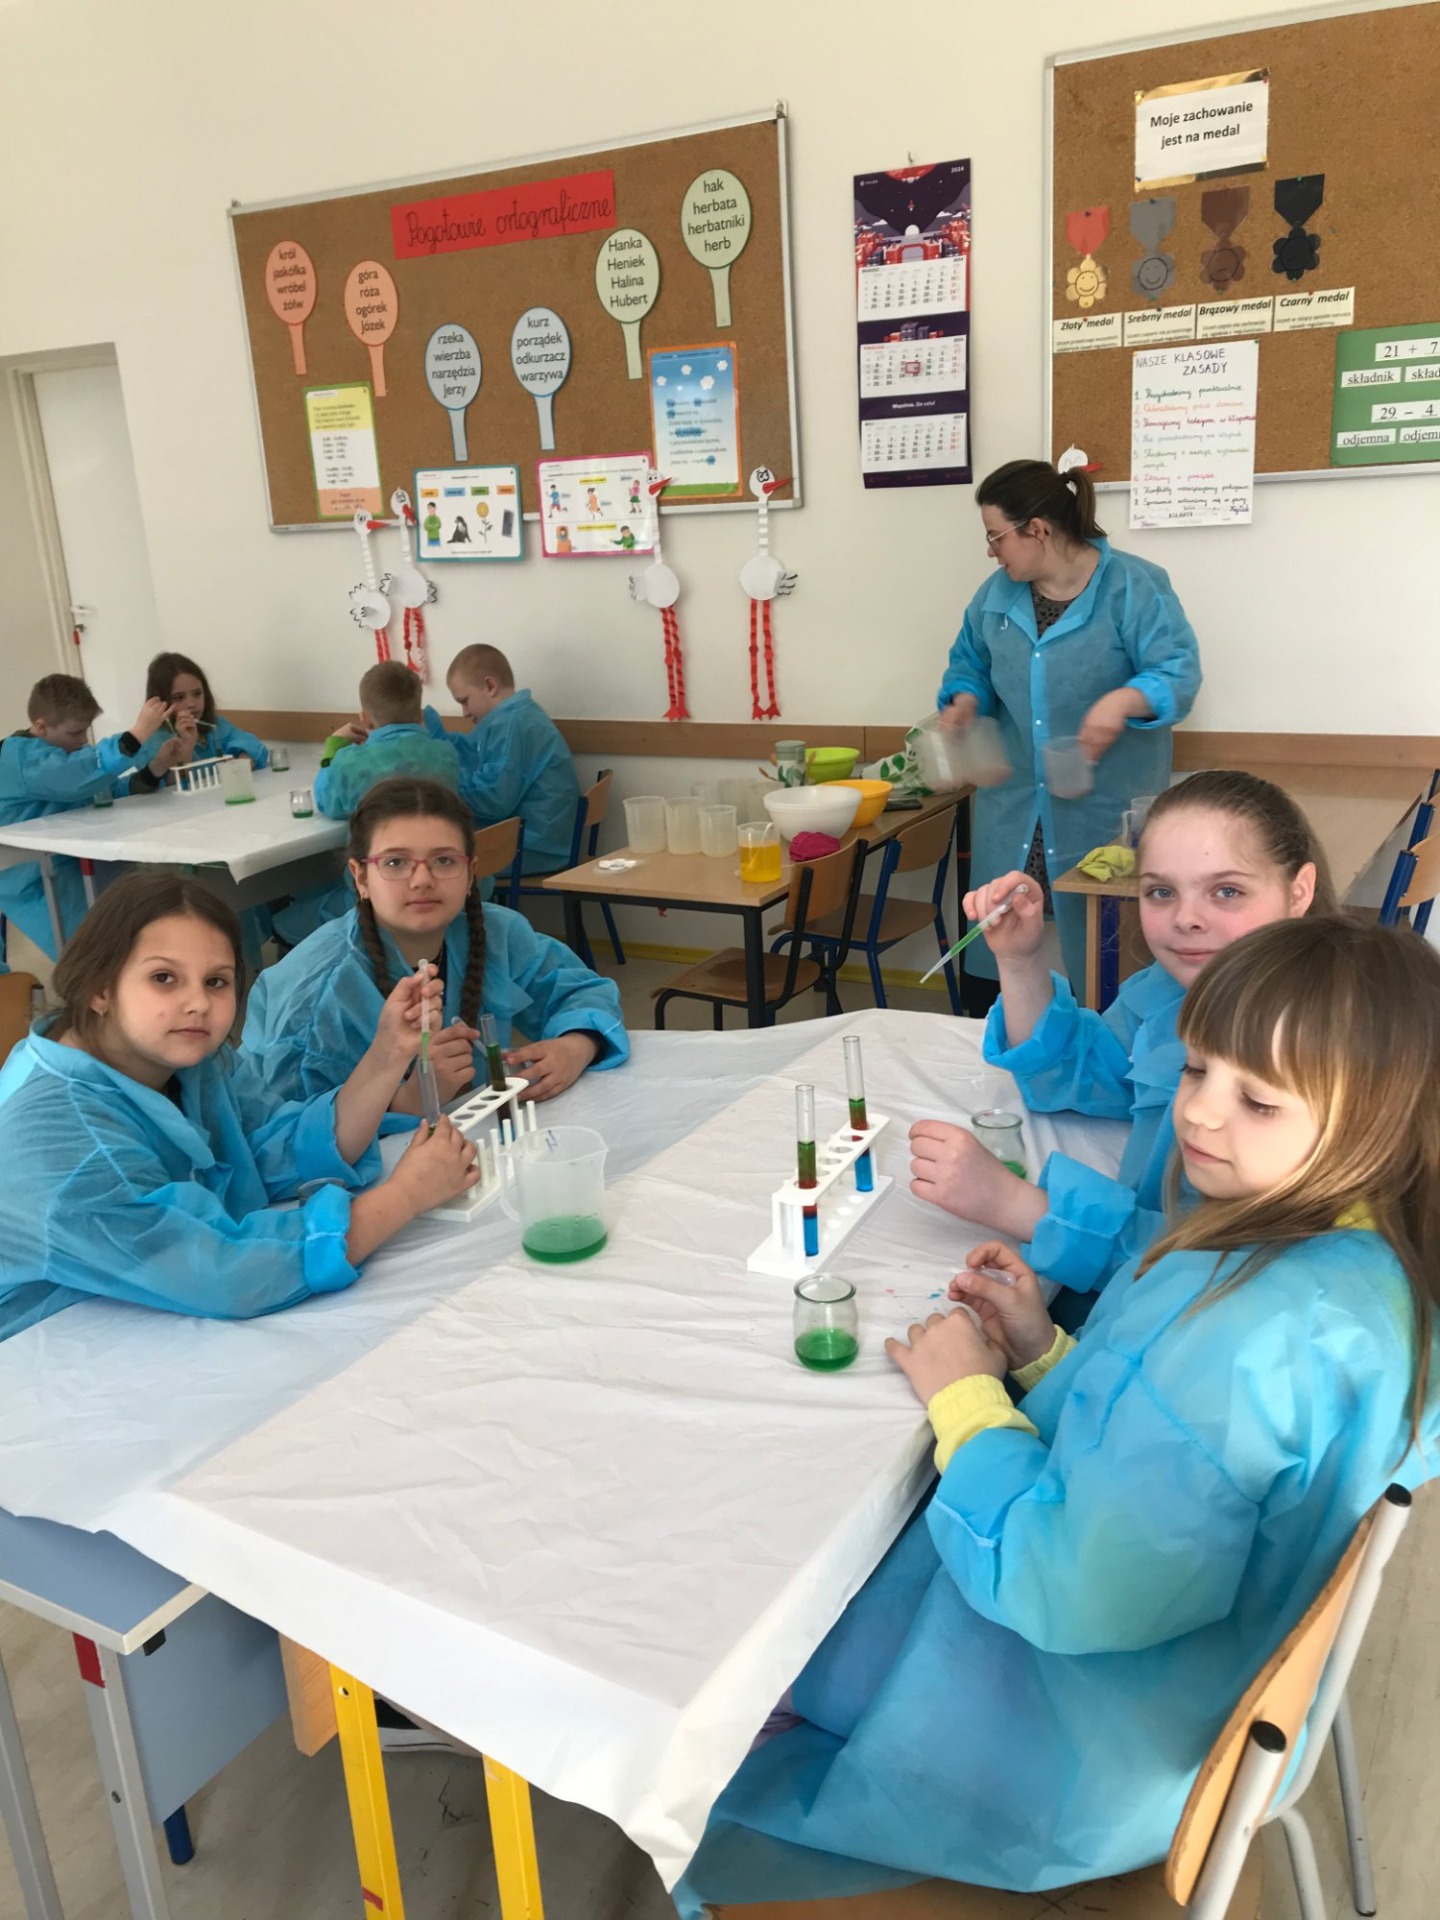 Grupa dzieci przy stolikach podczas eksperymentów